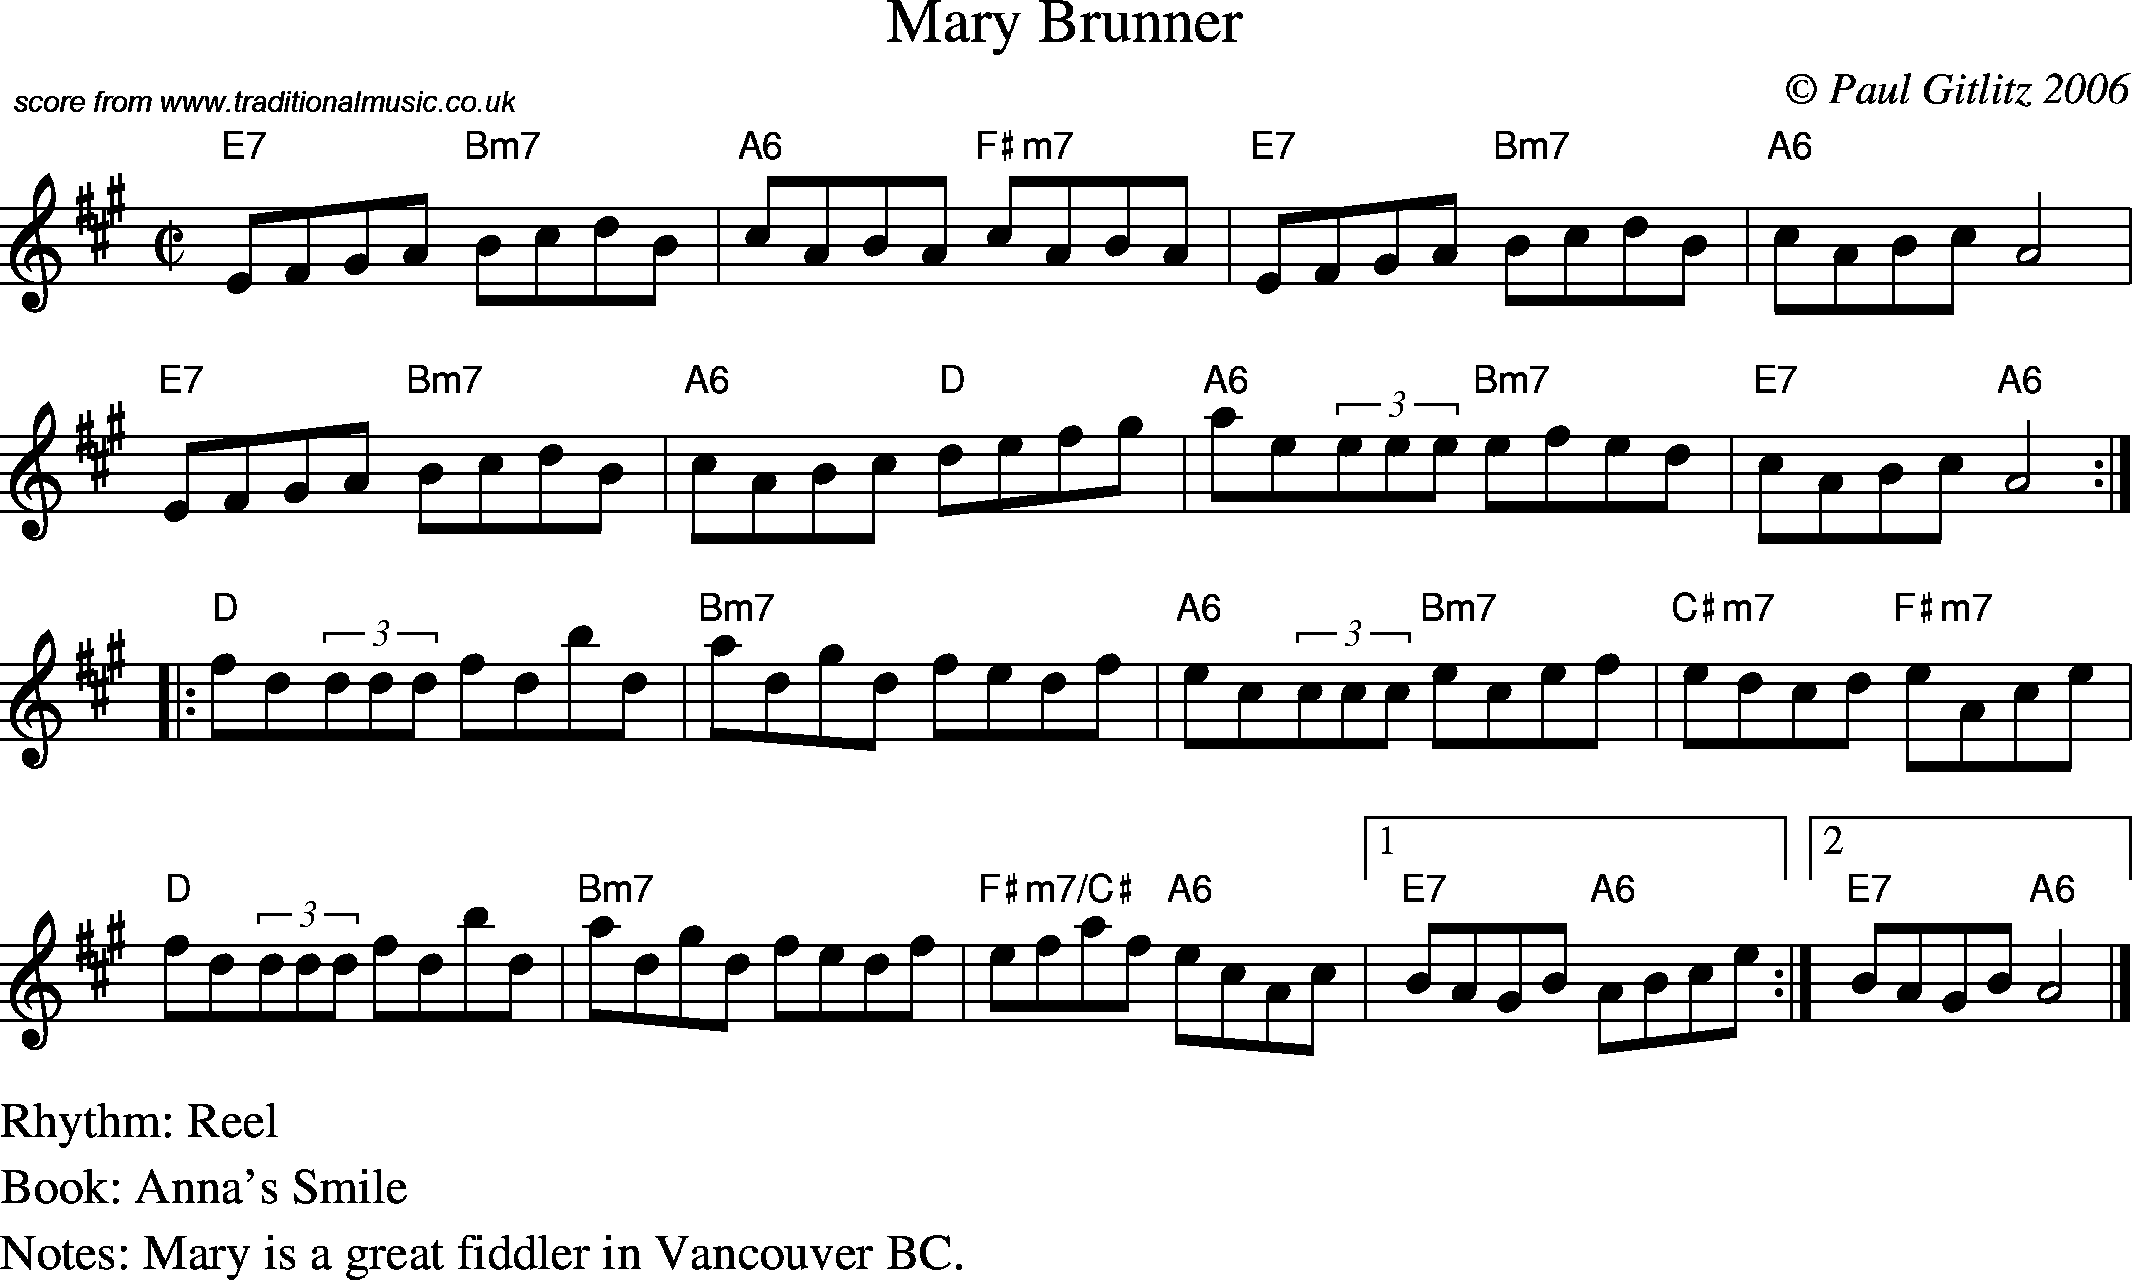 Sheet Music Score for Reel - Mary Brunner